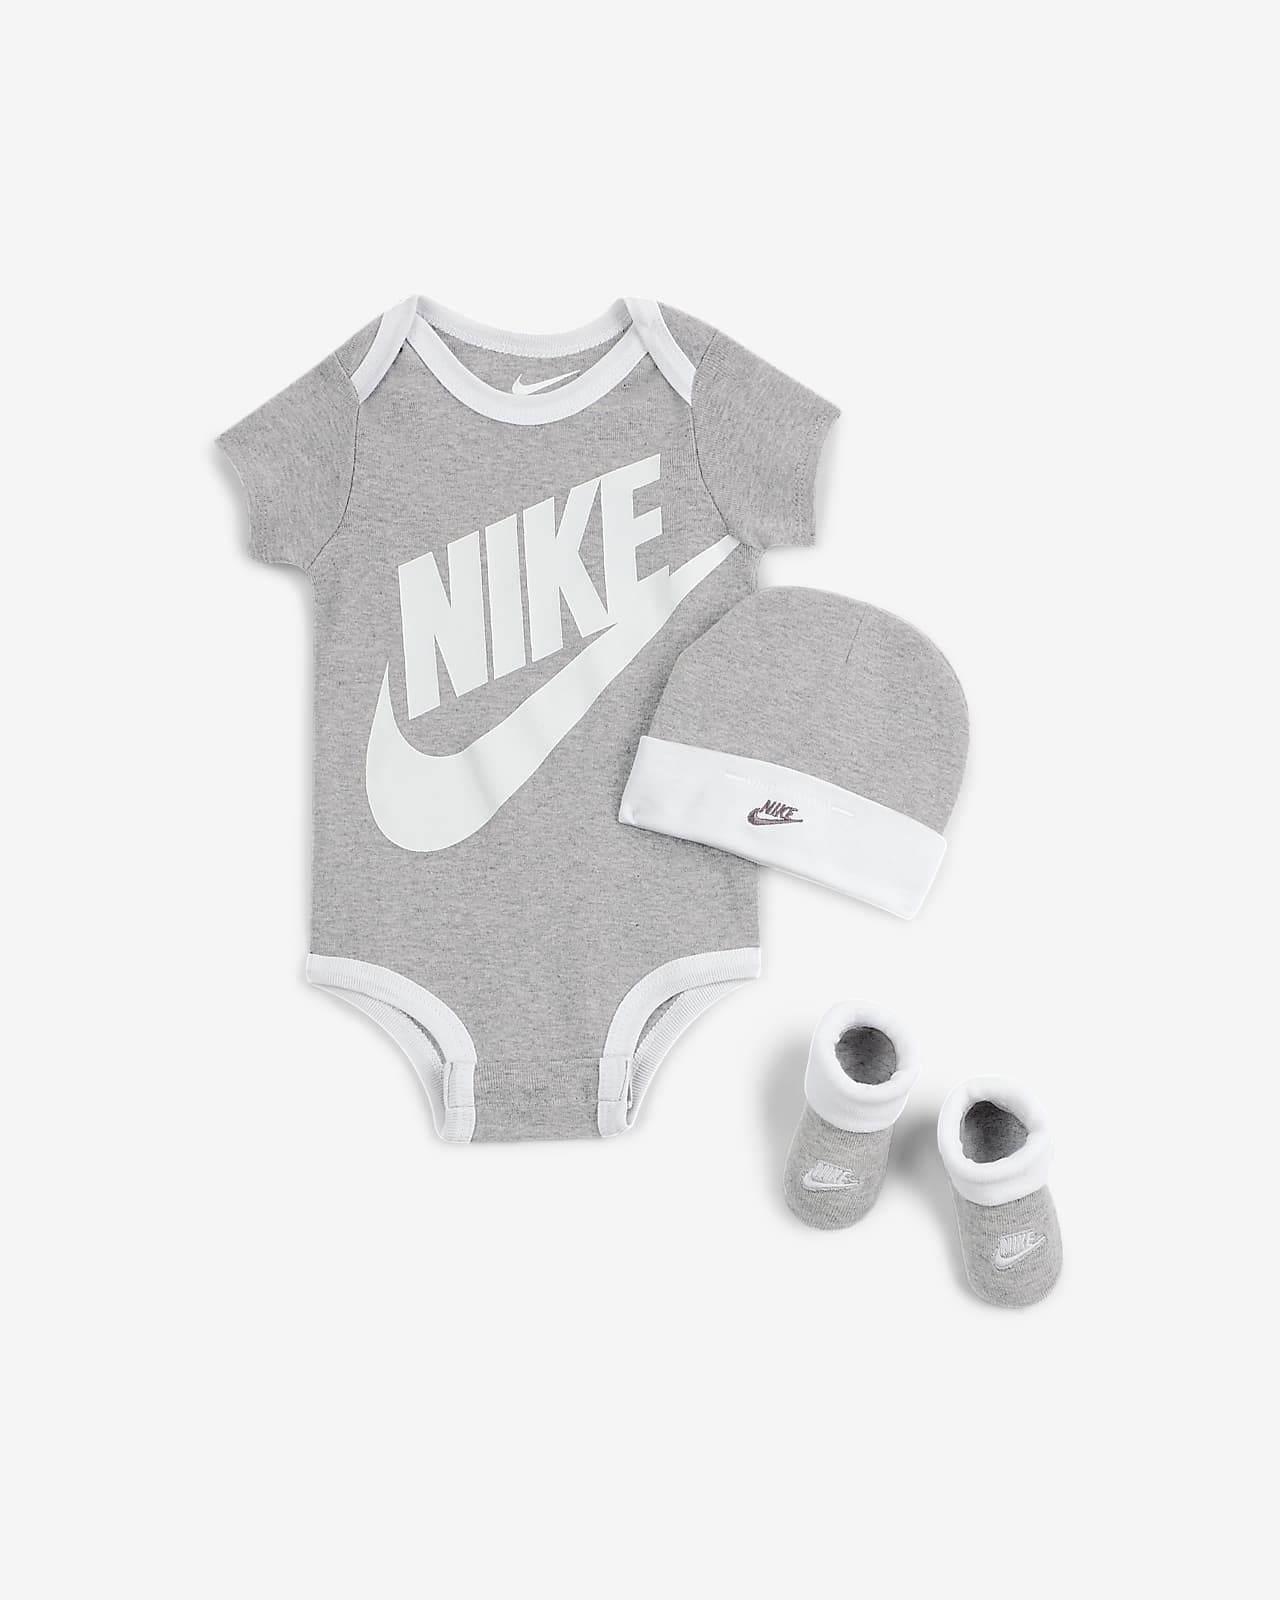 Nike háromrészes szett babáknak (0-6 hónapos)